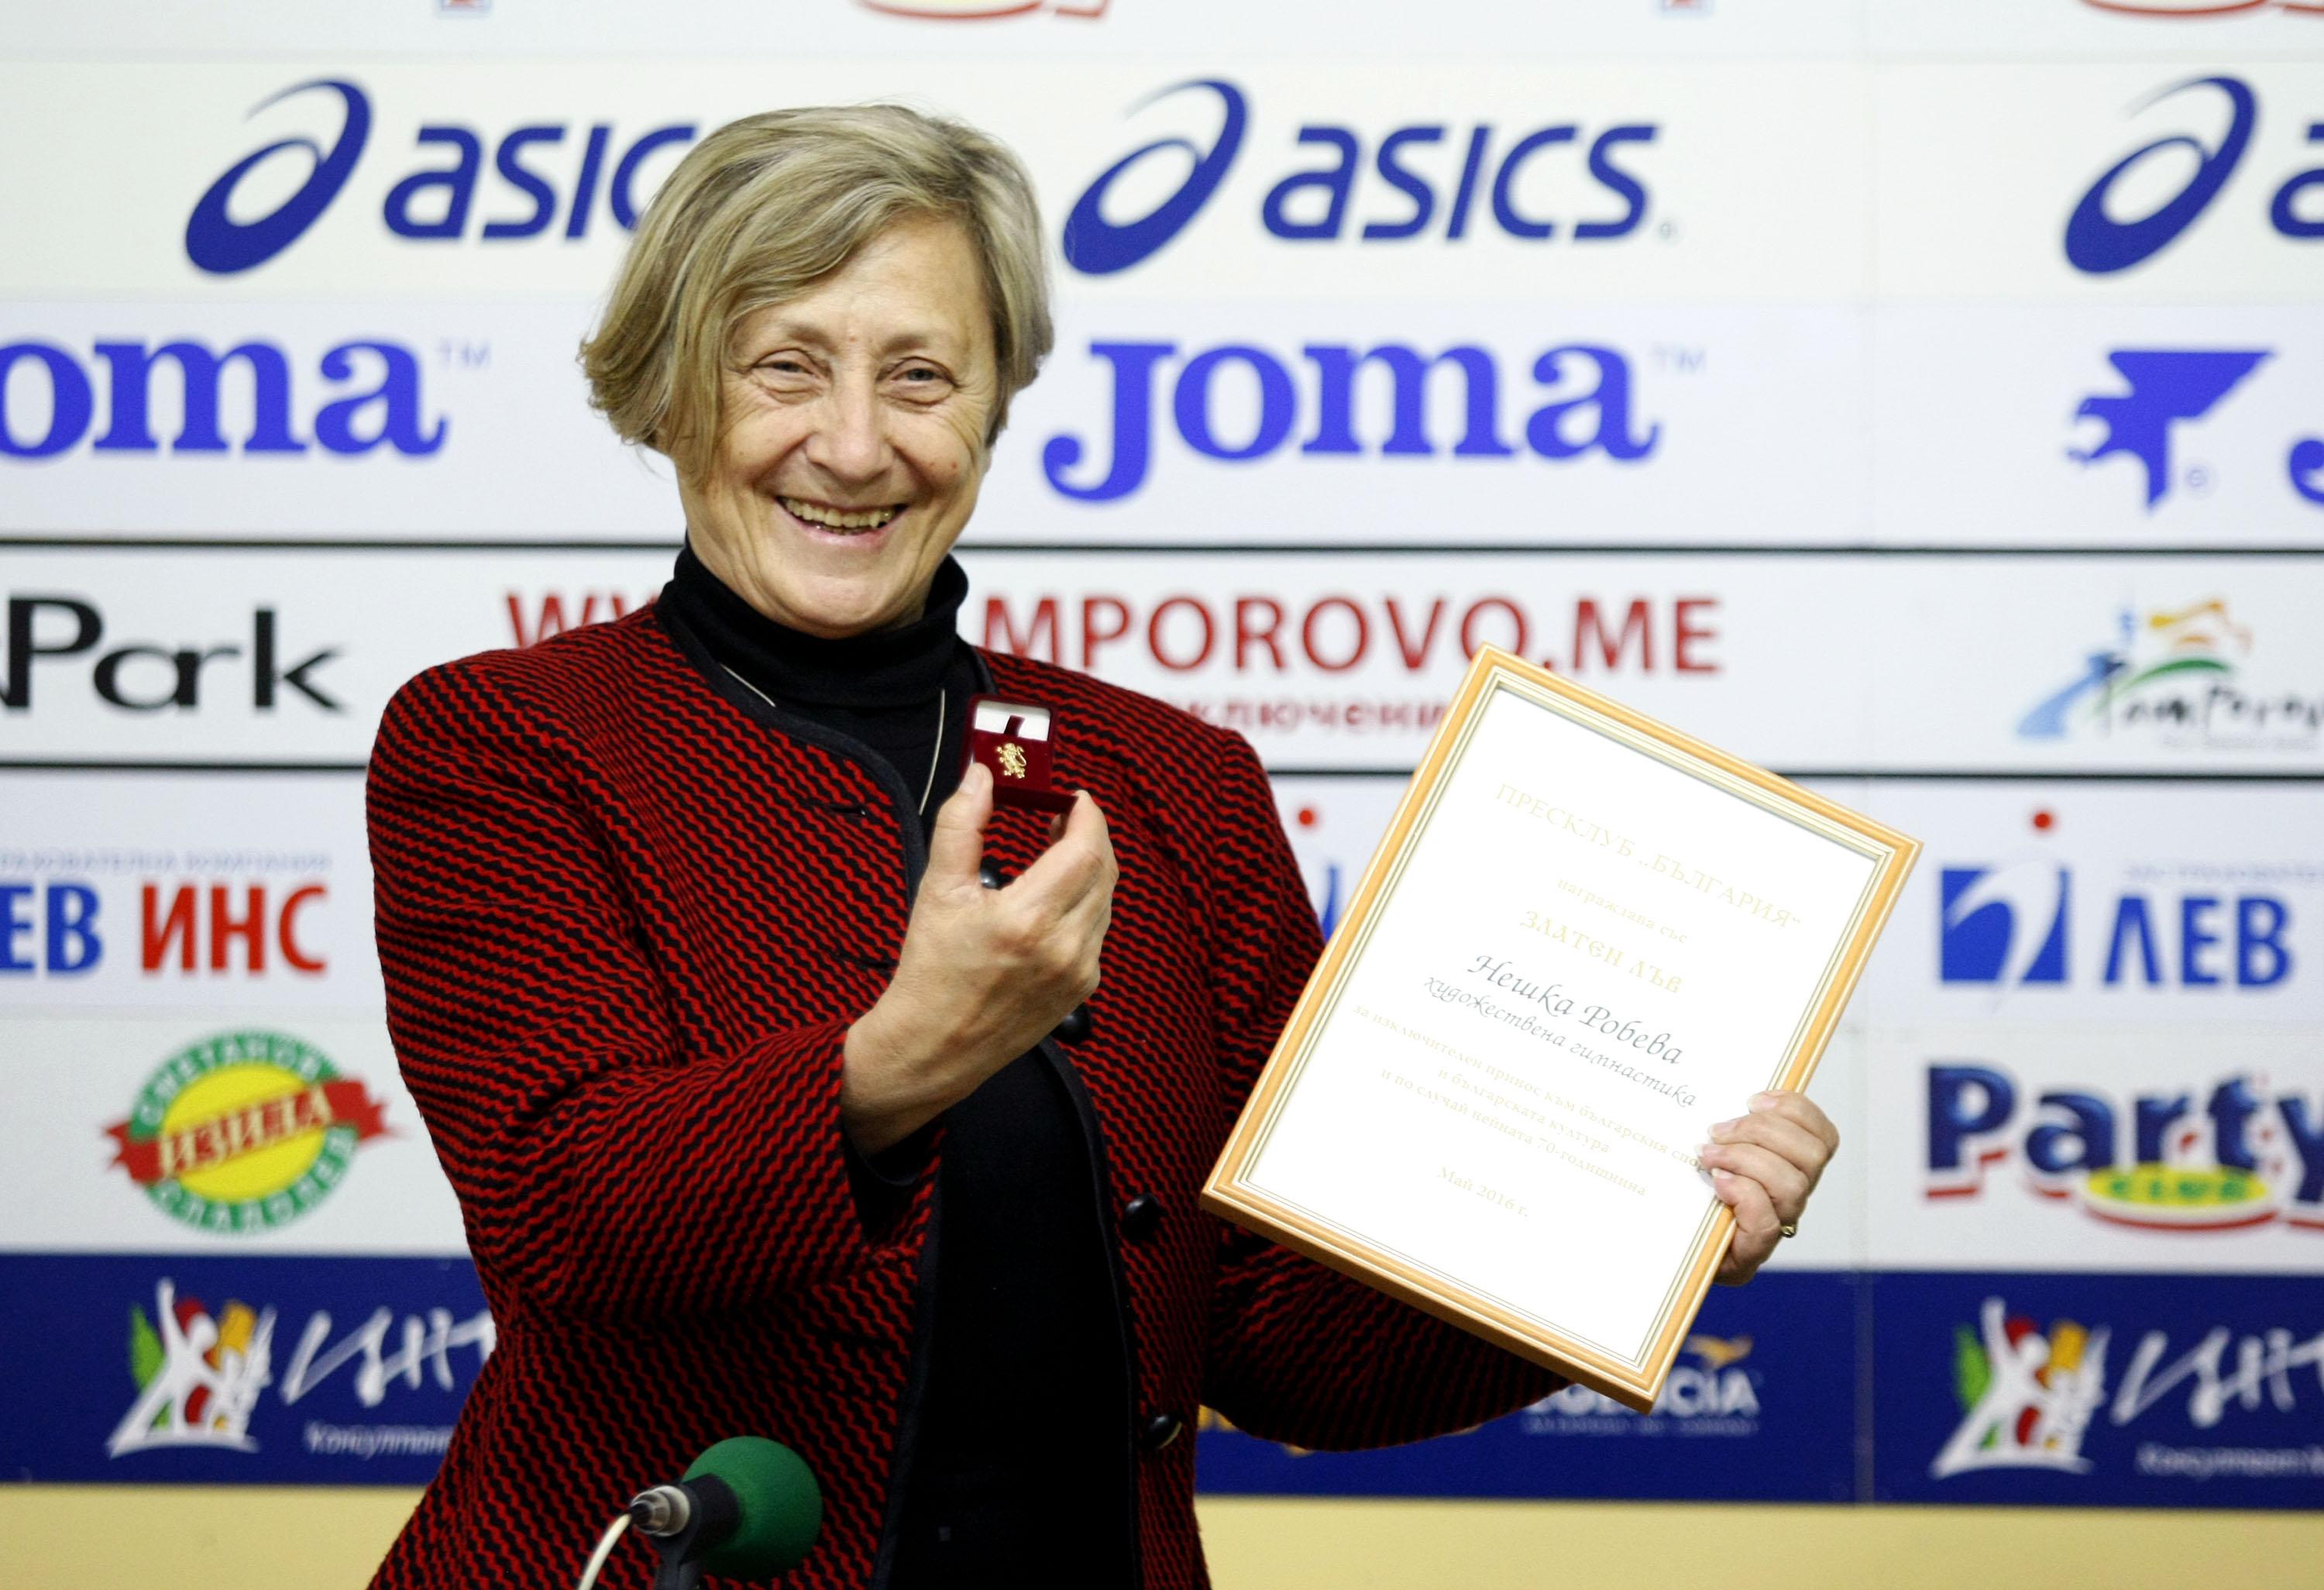 Наградиха Нeшка Робева със ”Златен лъв” по повод 70-годишния й юбилей